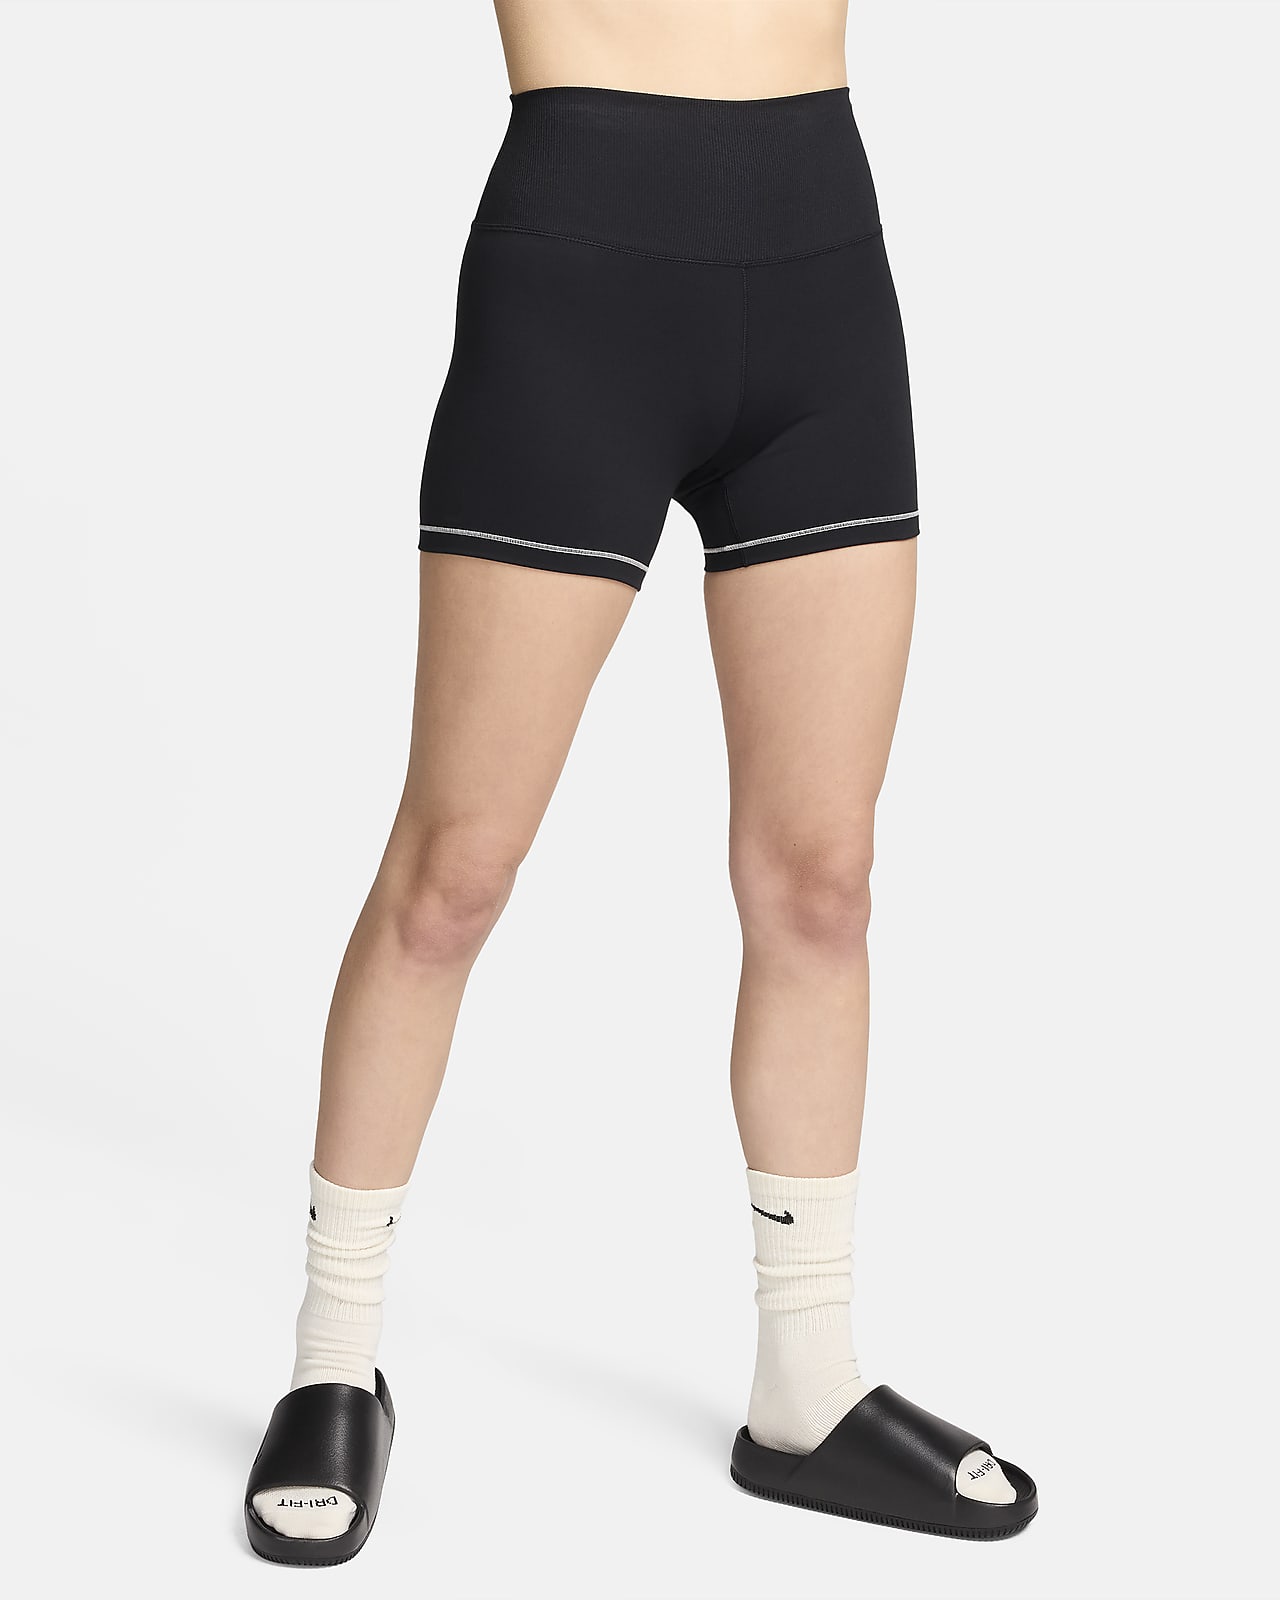 Nike One Rib Mallas cortas de 13 cm y talle alto - Mujer